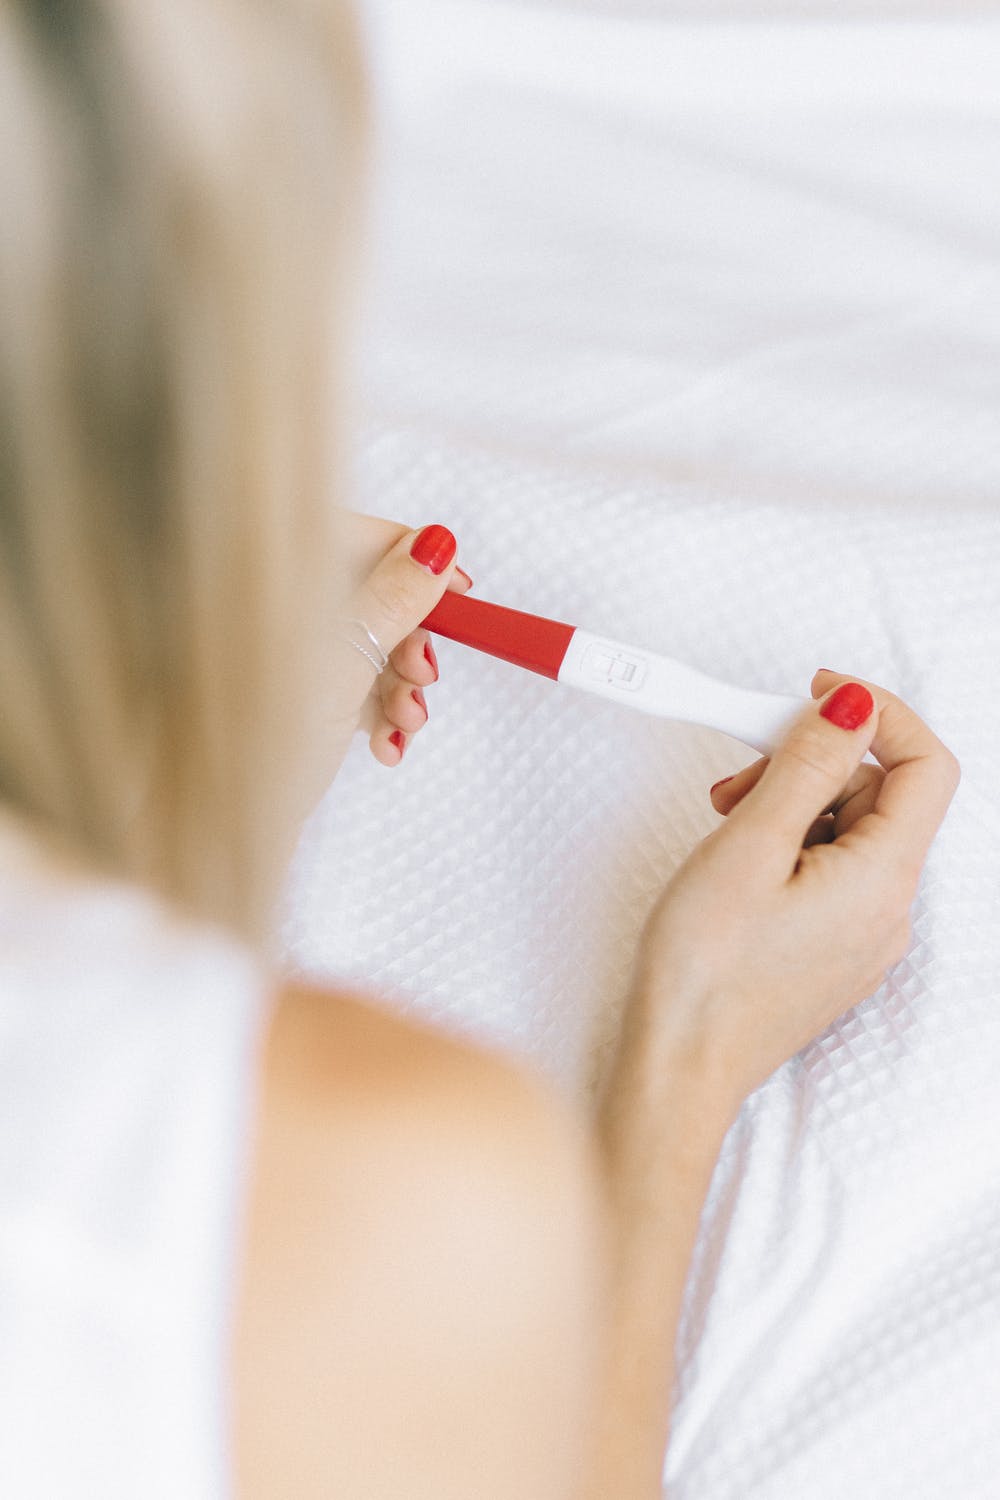 Test de embarazo. | Foto: Pexels